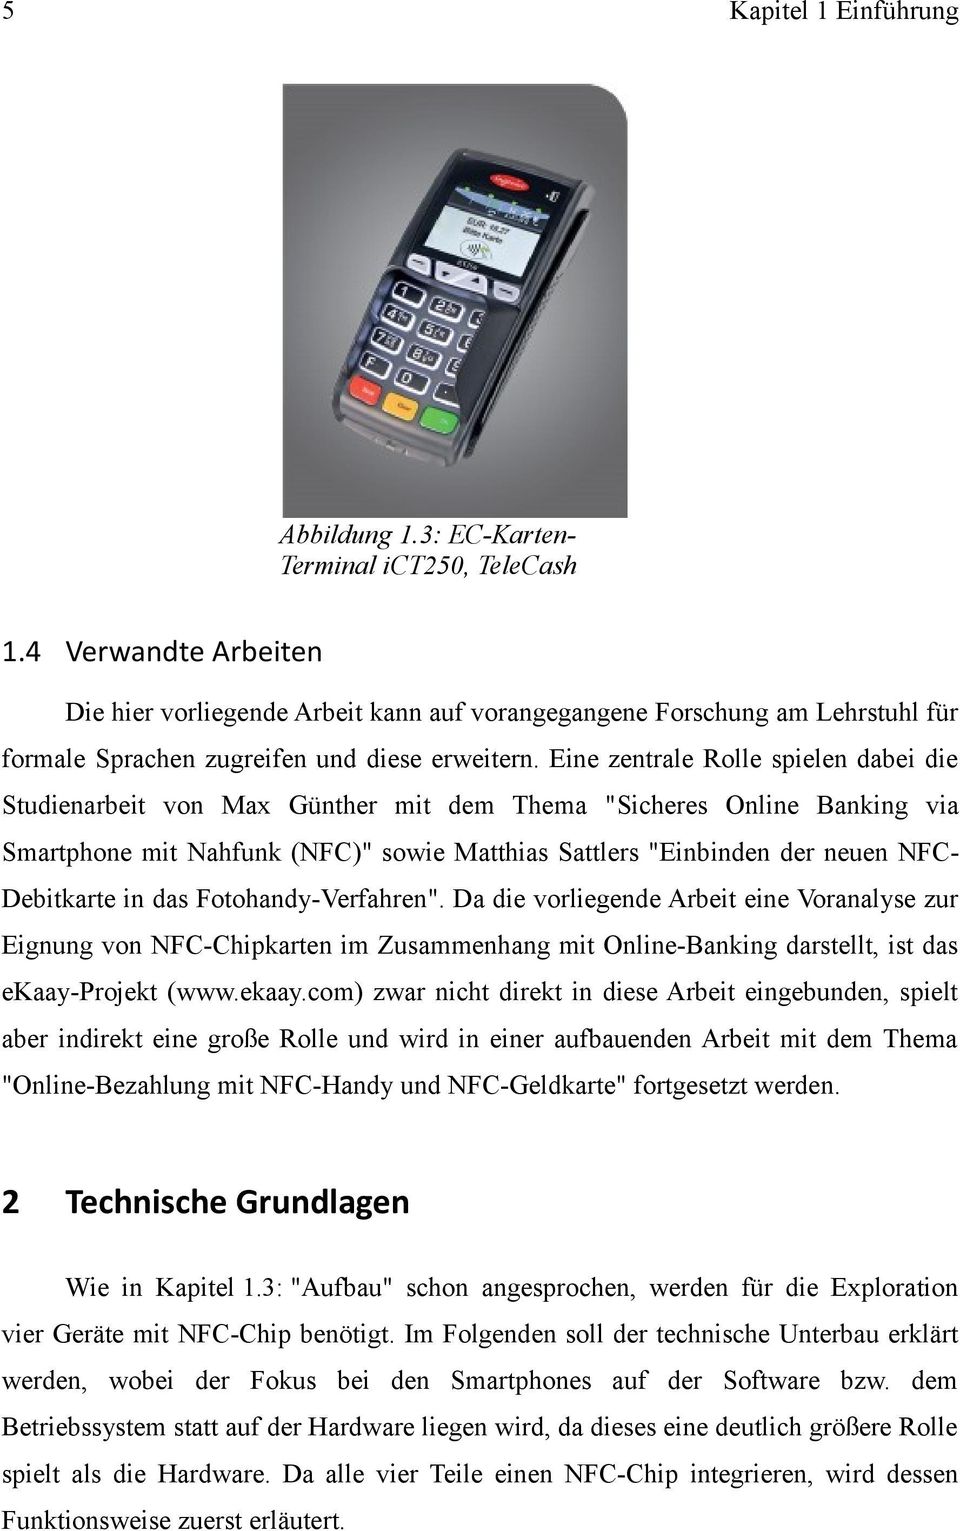 Eine zentrale Rolle spielen dabei die Studienarbeit von Max Günther mit dem Thema "Sicheres Online Banking via Smartphone mit Nahfunk (NFC)" sowie Matthias Sattlers "Einbinden der neuen NFCDebitkarte